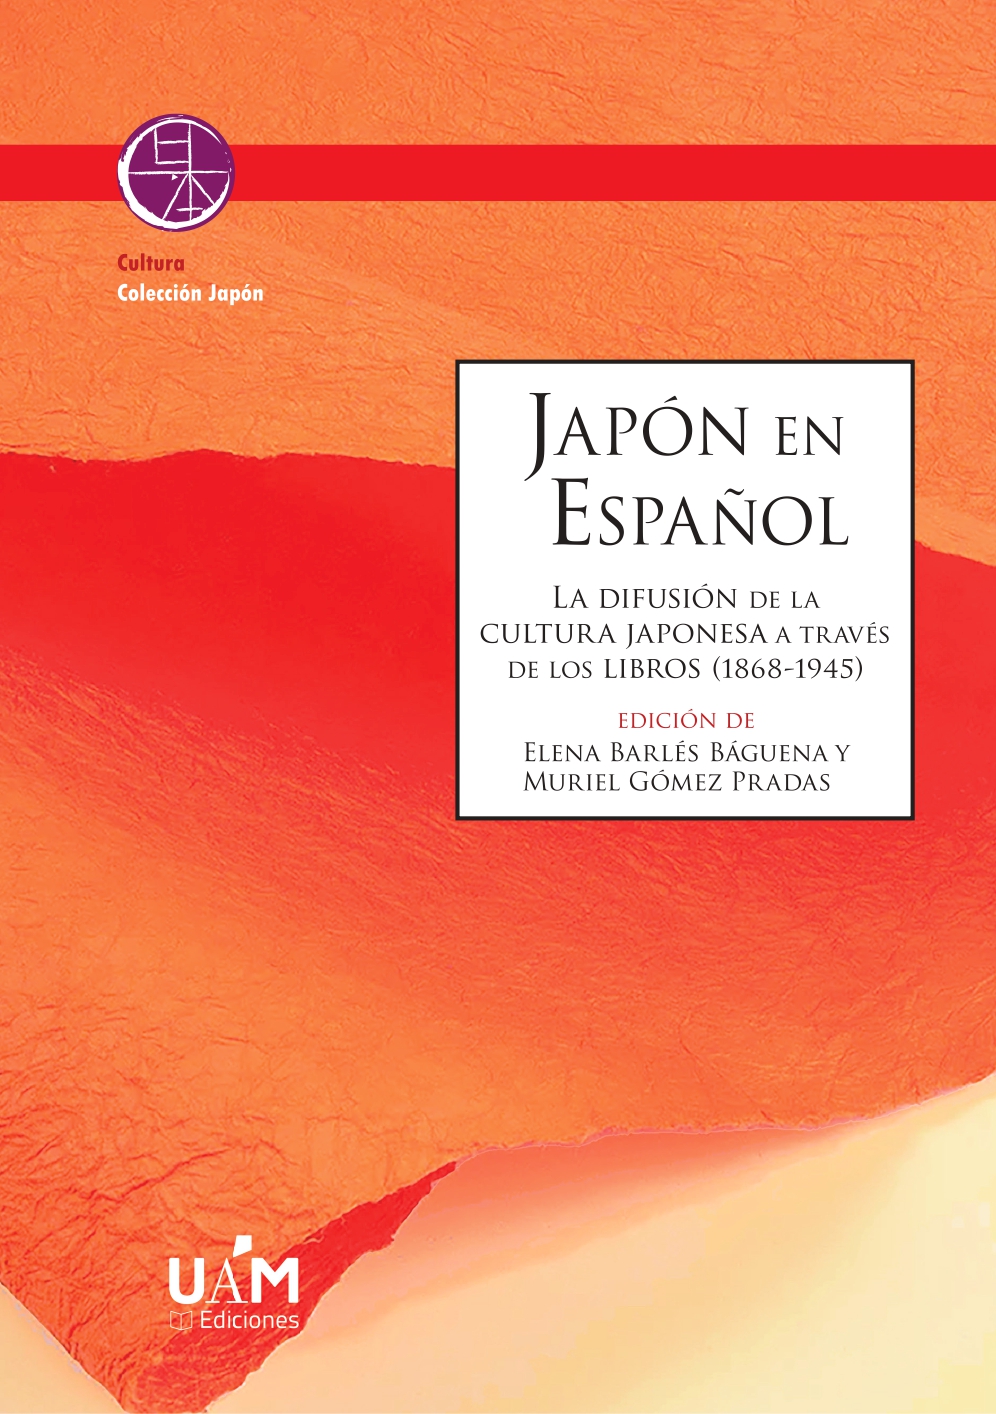 Imagen de portada del libro Japón en español